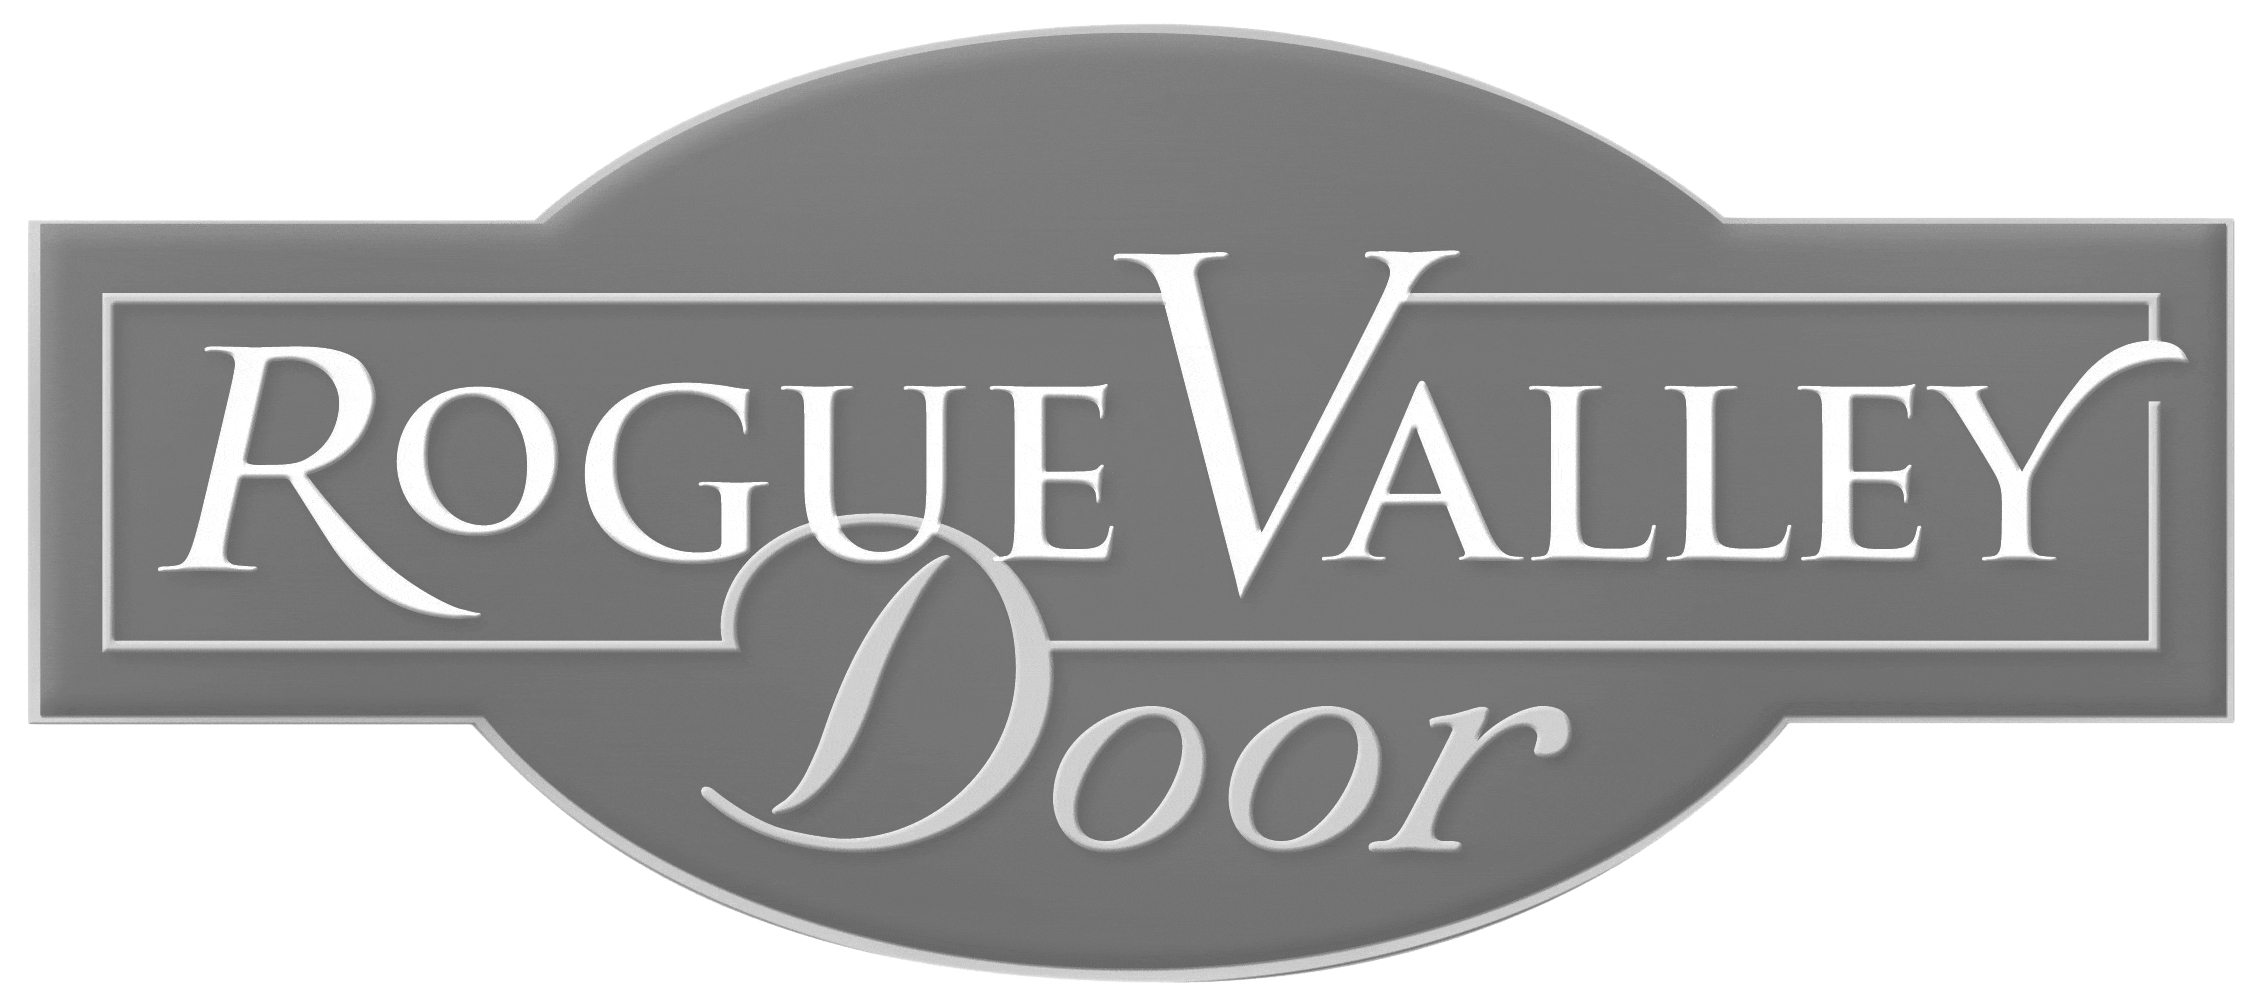 rogue-valley-door-logo.jpg